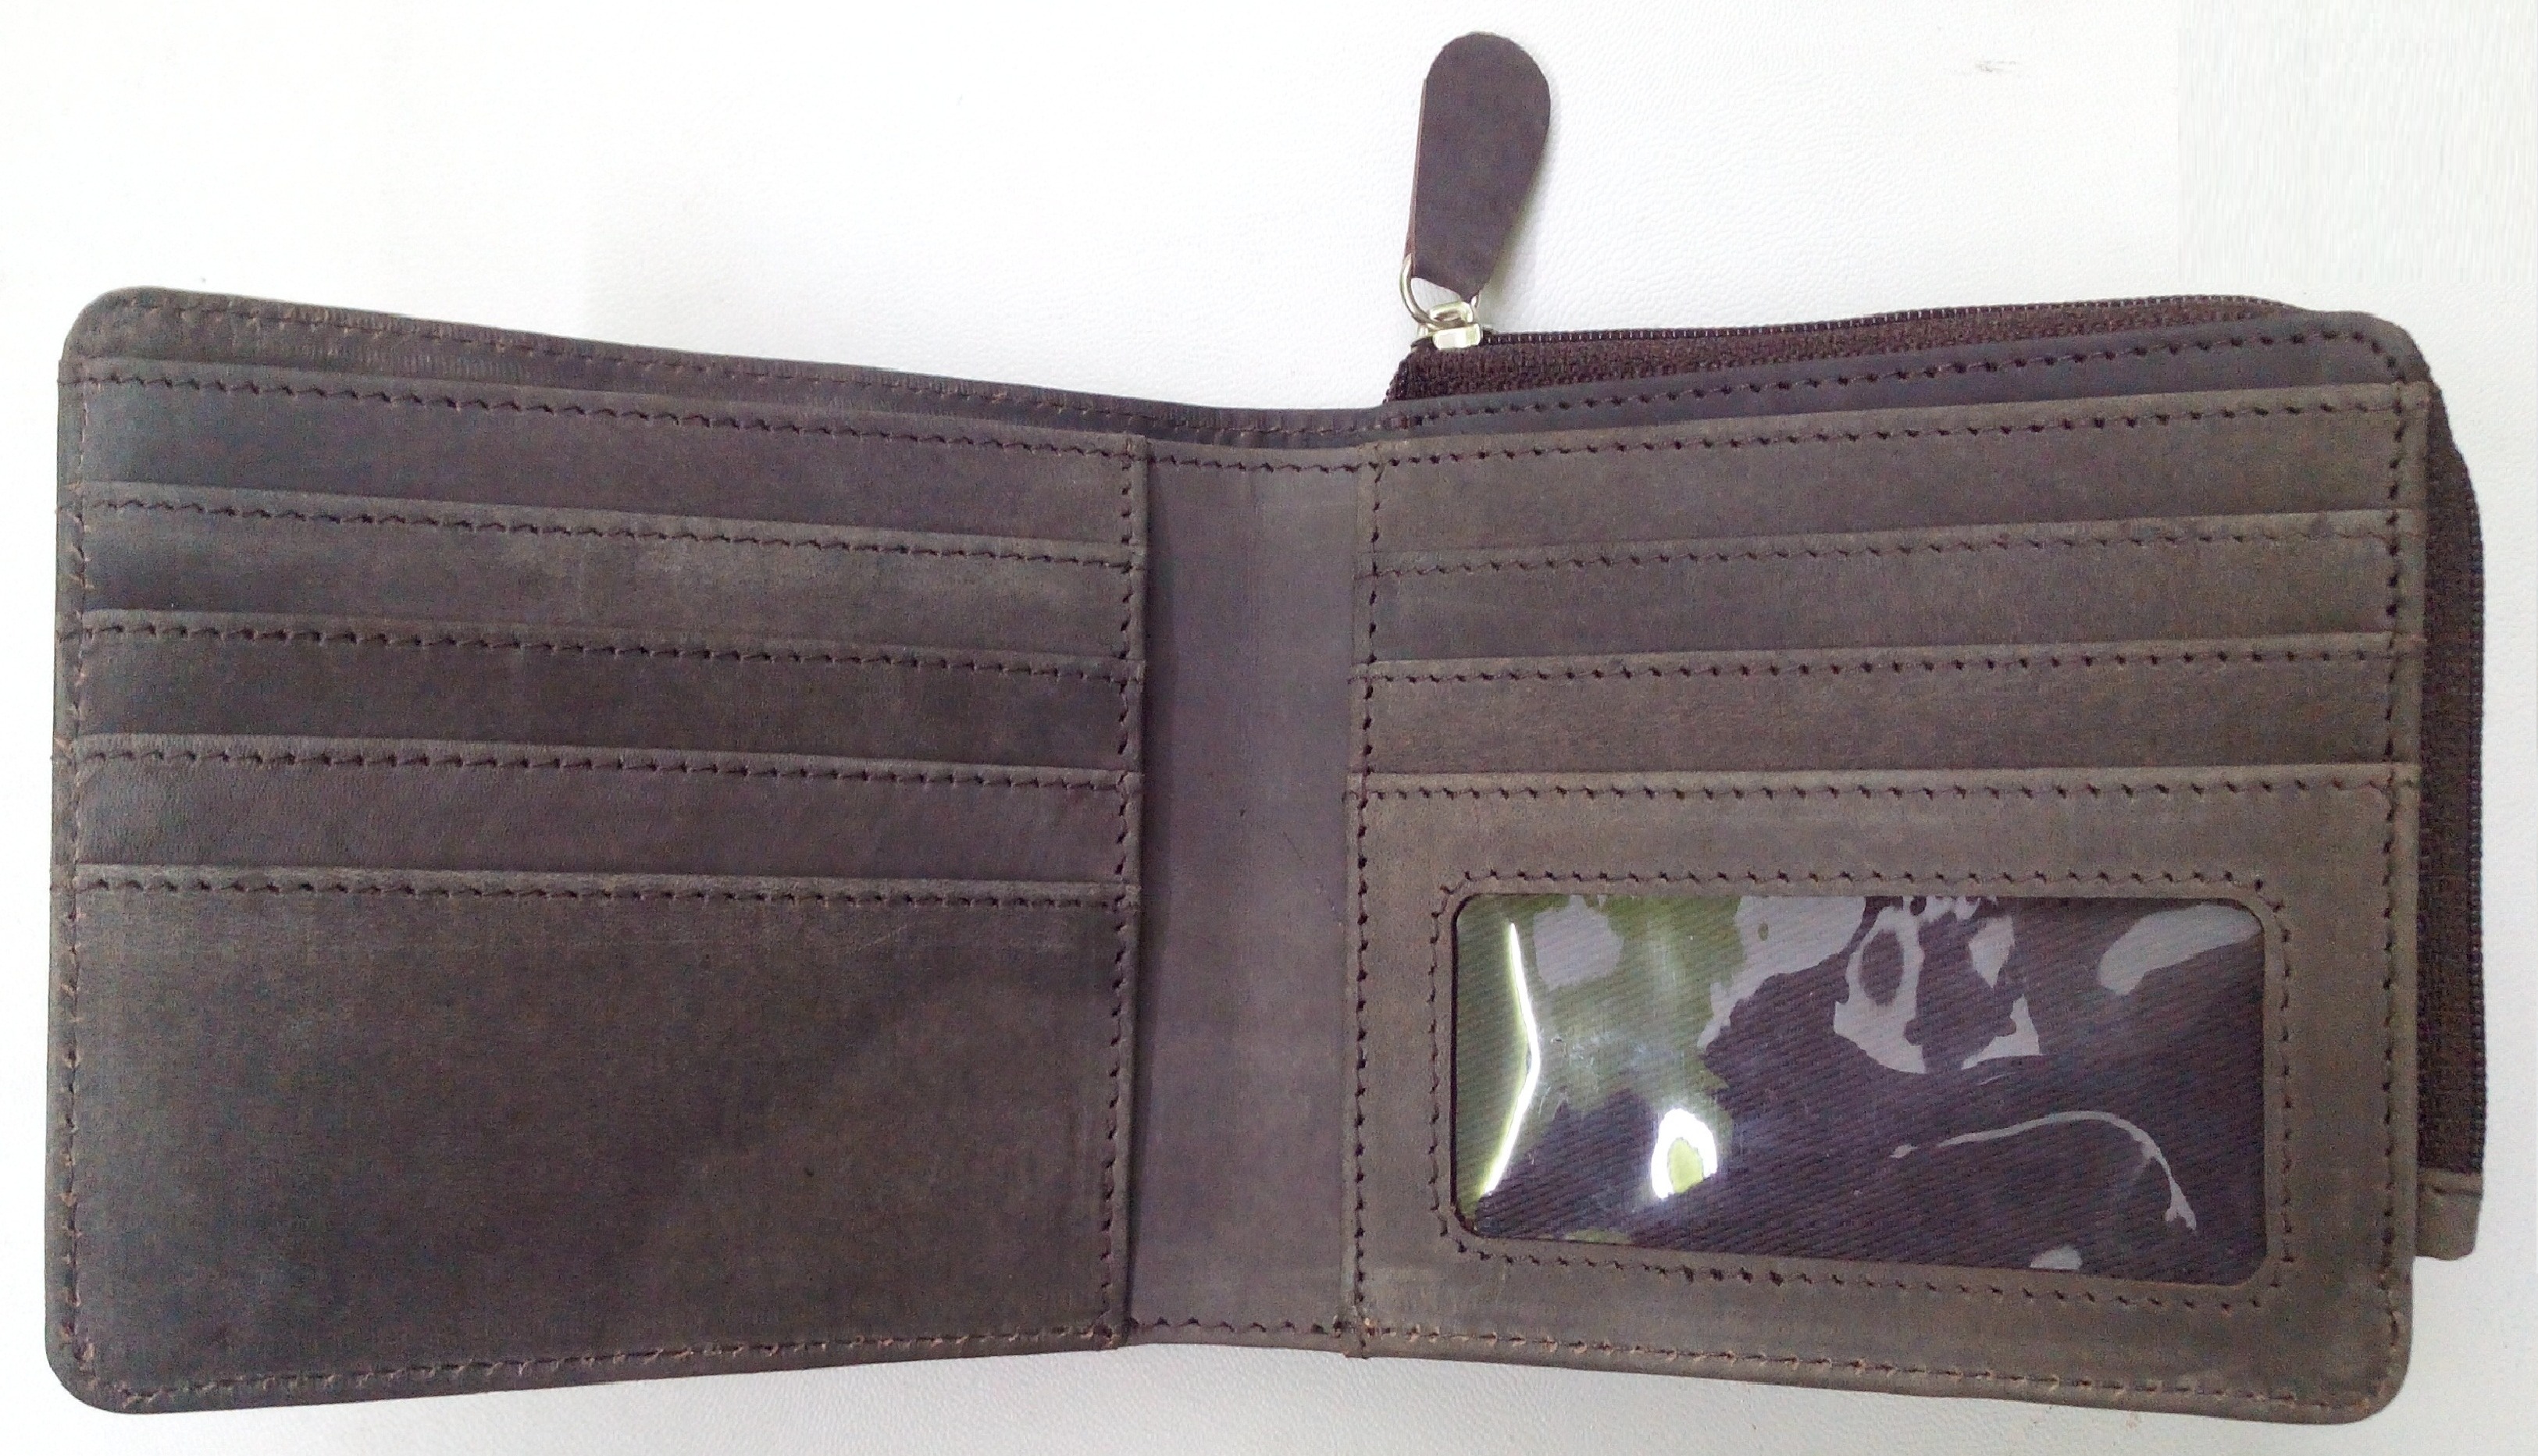 Vintage leather wallet